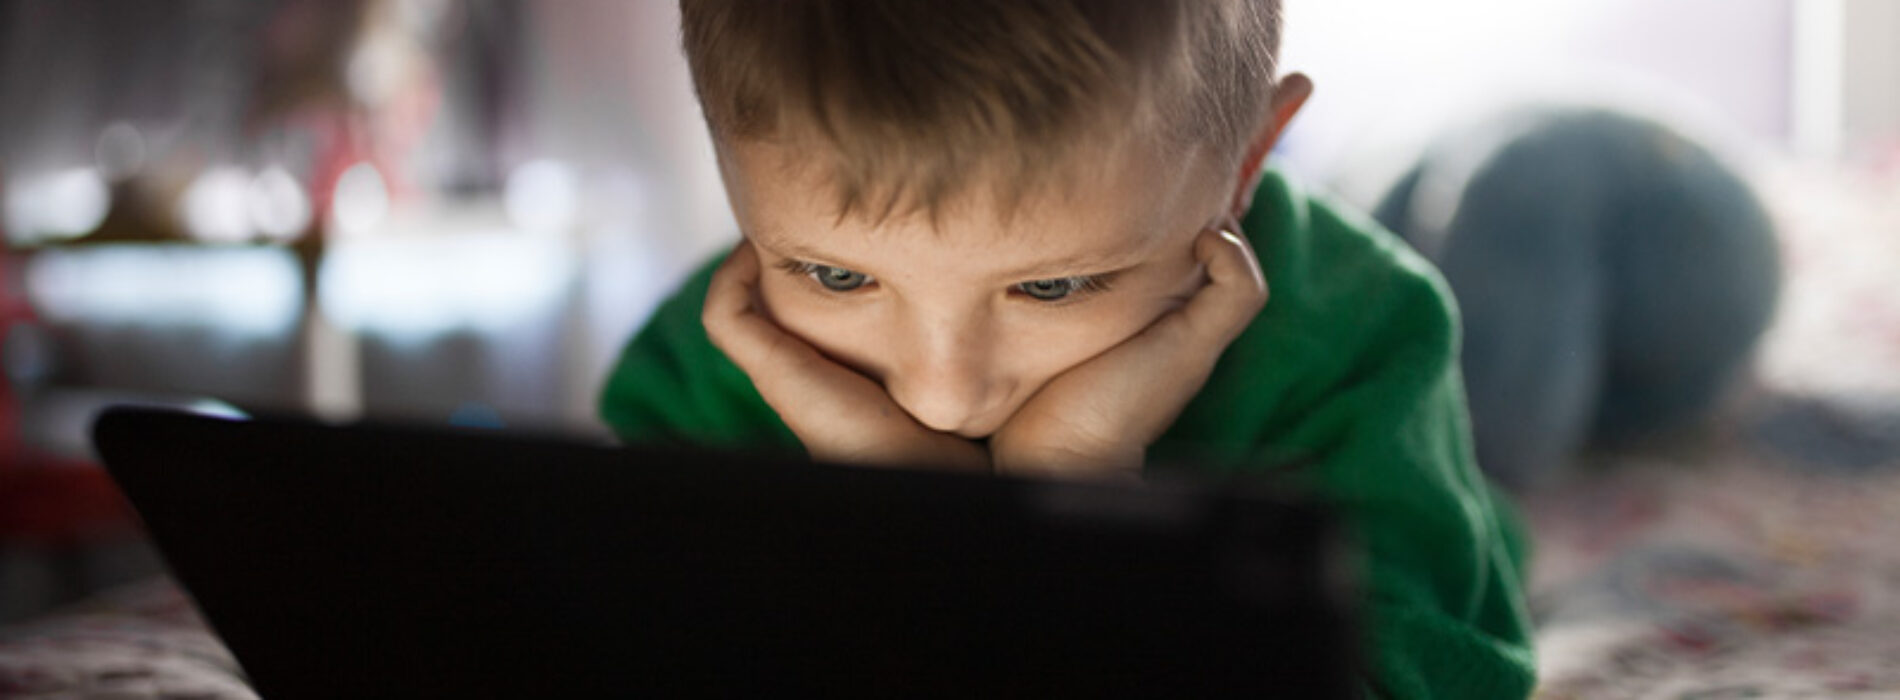 Jak zwiększyć bezpieczeństwo dziecka w grach online?